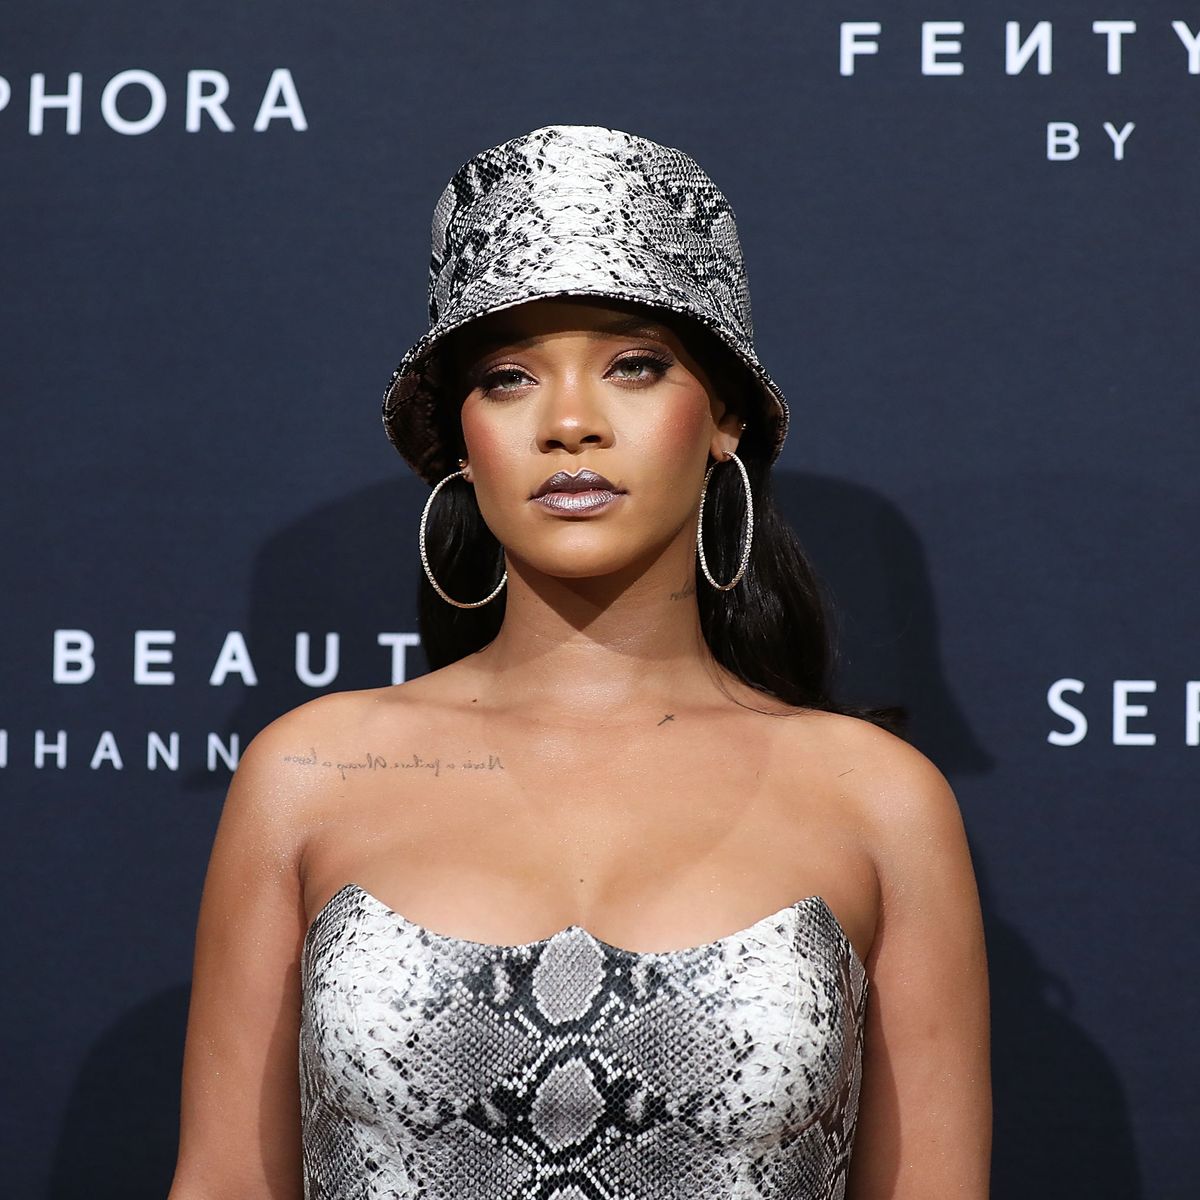 Rihanna Makes History With New LVMH Fashion Line